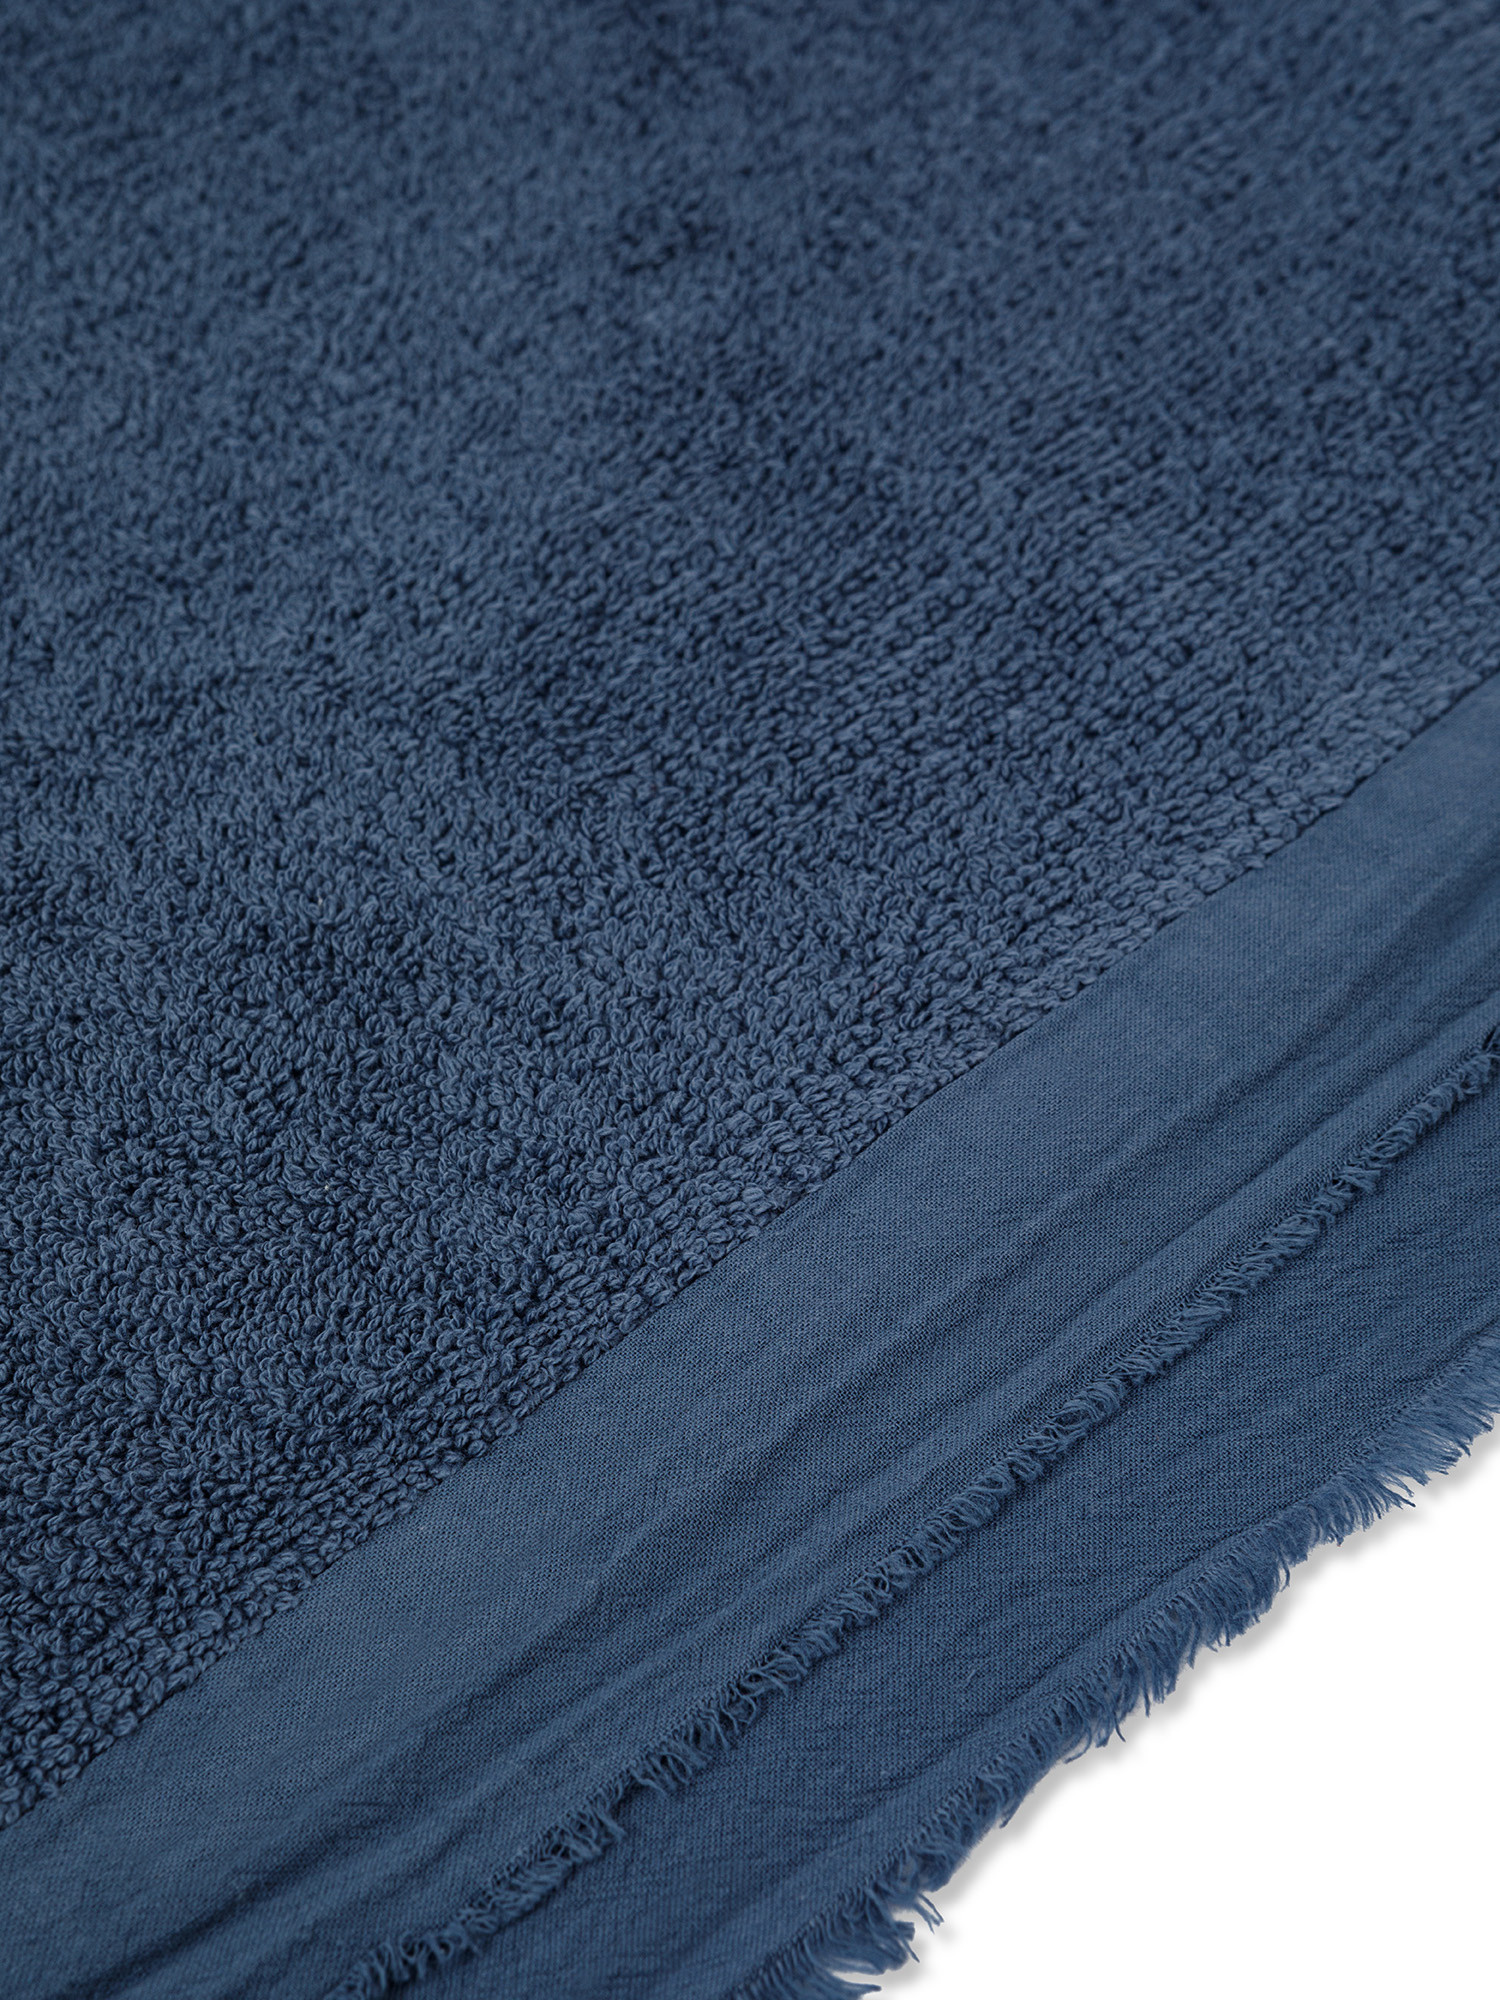 Asciugamano spugna di cotone con volant, Blu, large image number 1